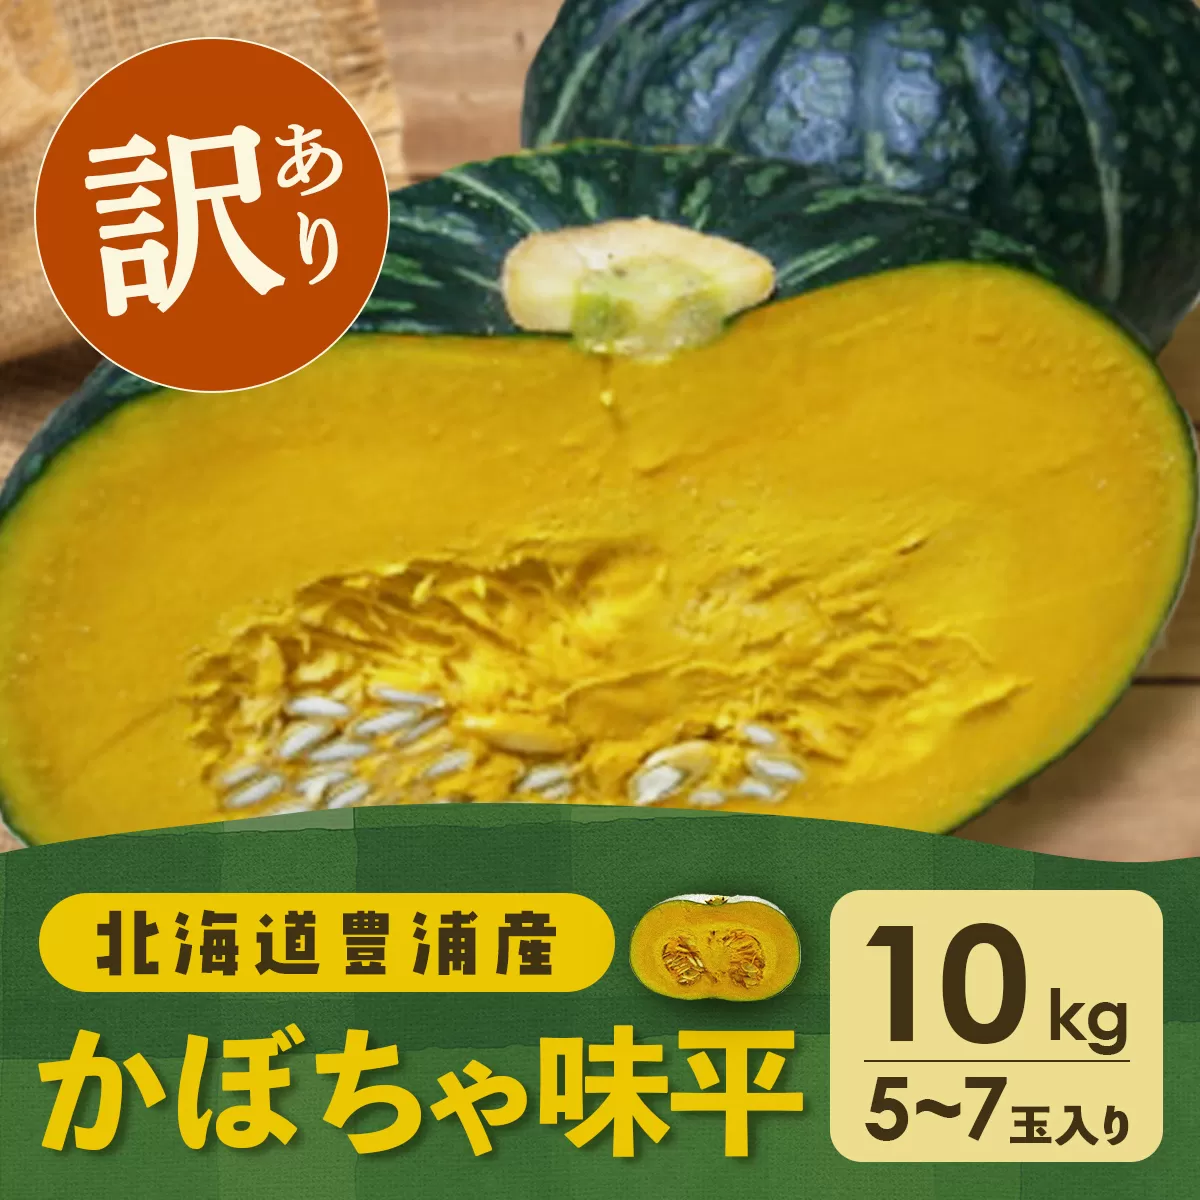 【訳あり】北海道 豊浦産 かぼちゃ 味平 10kg 5〜7玉入り TYUH006